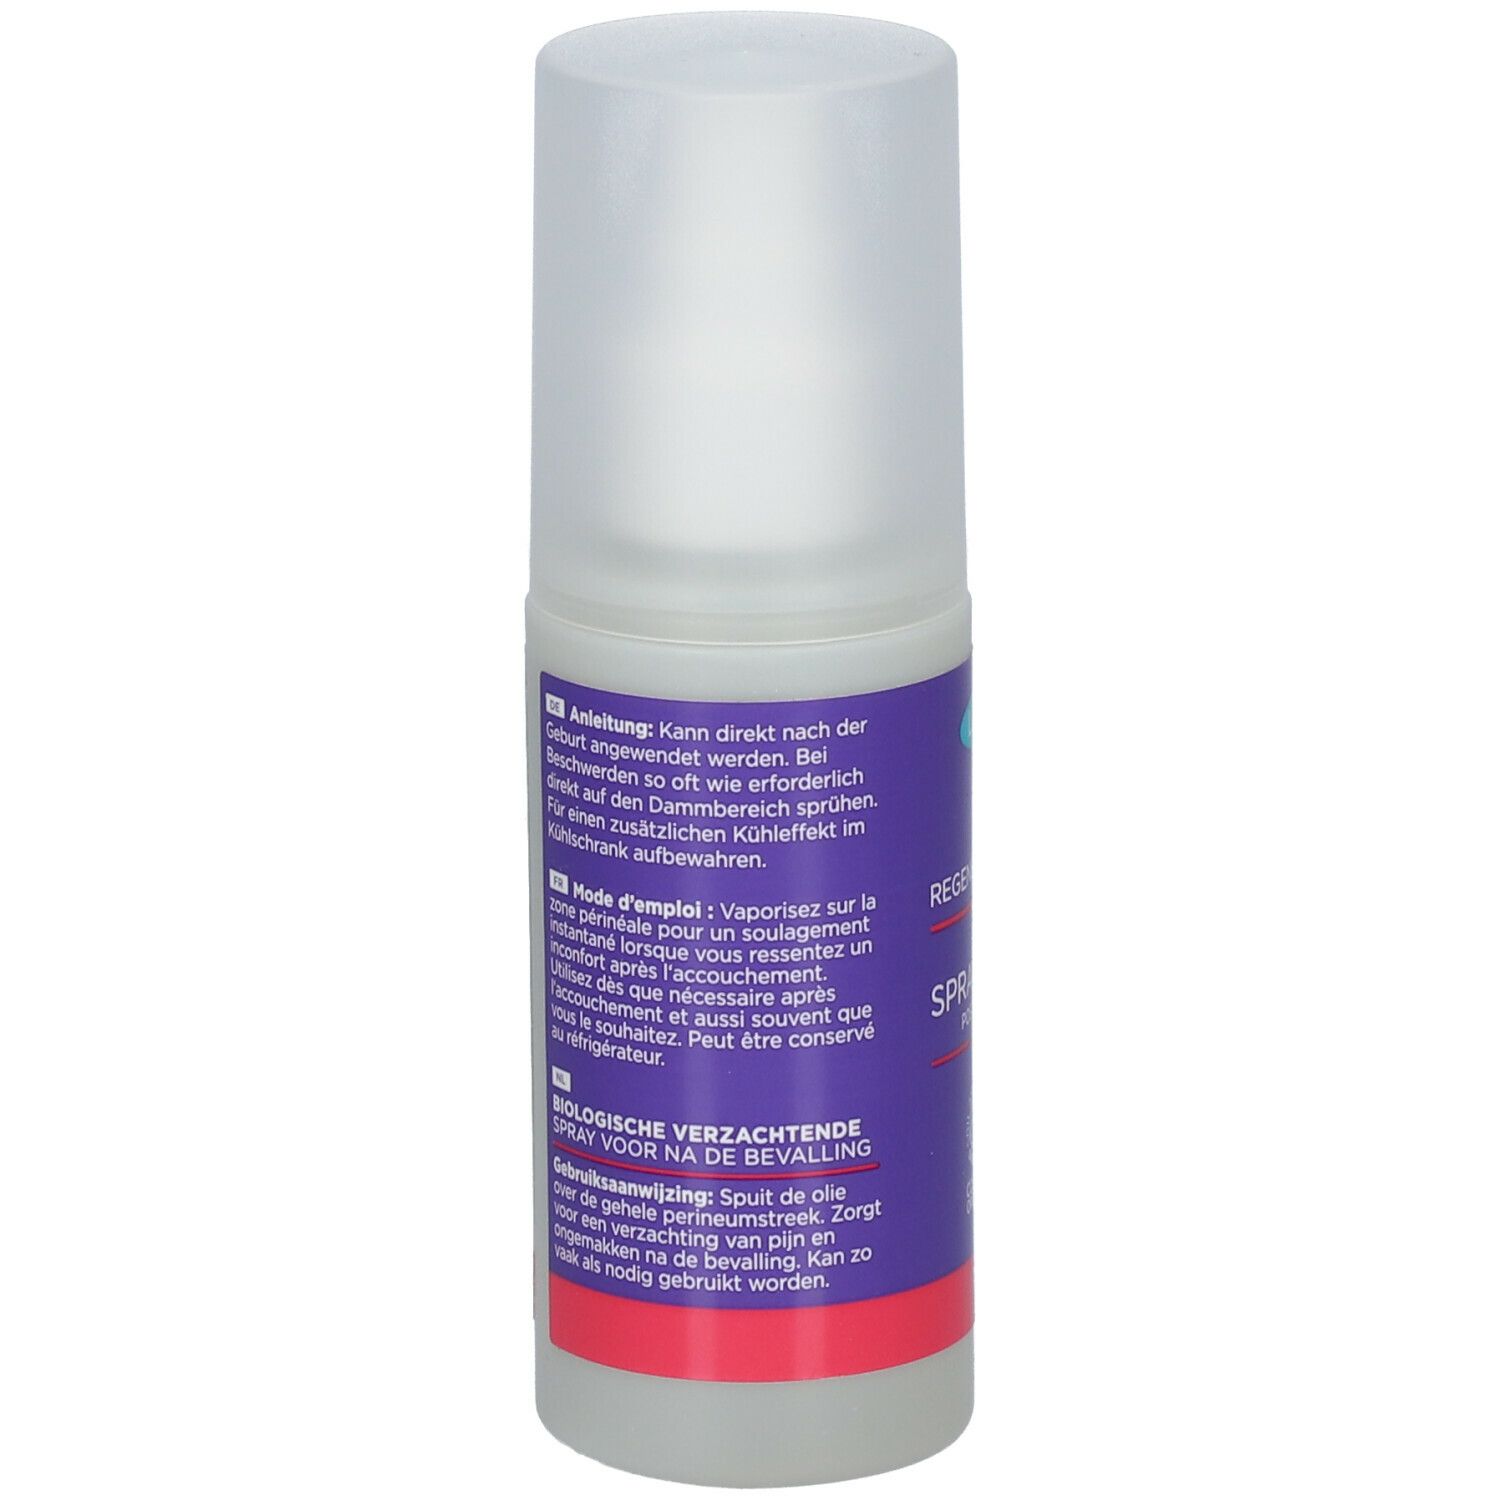 Lansinoh - Spray régénérant BIO 100 ml